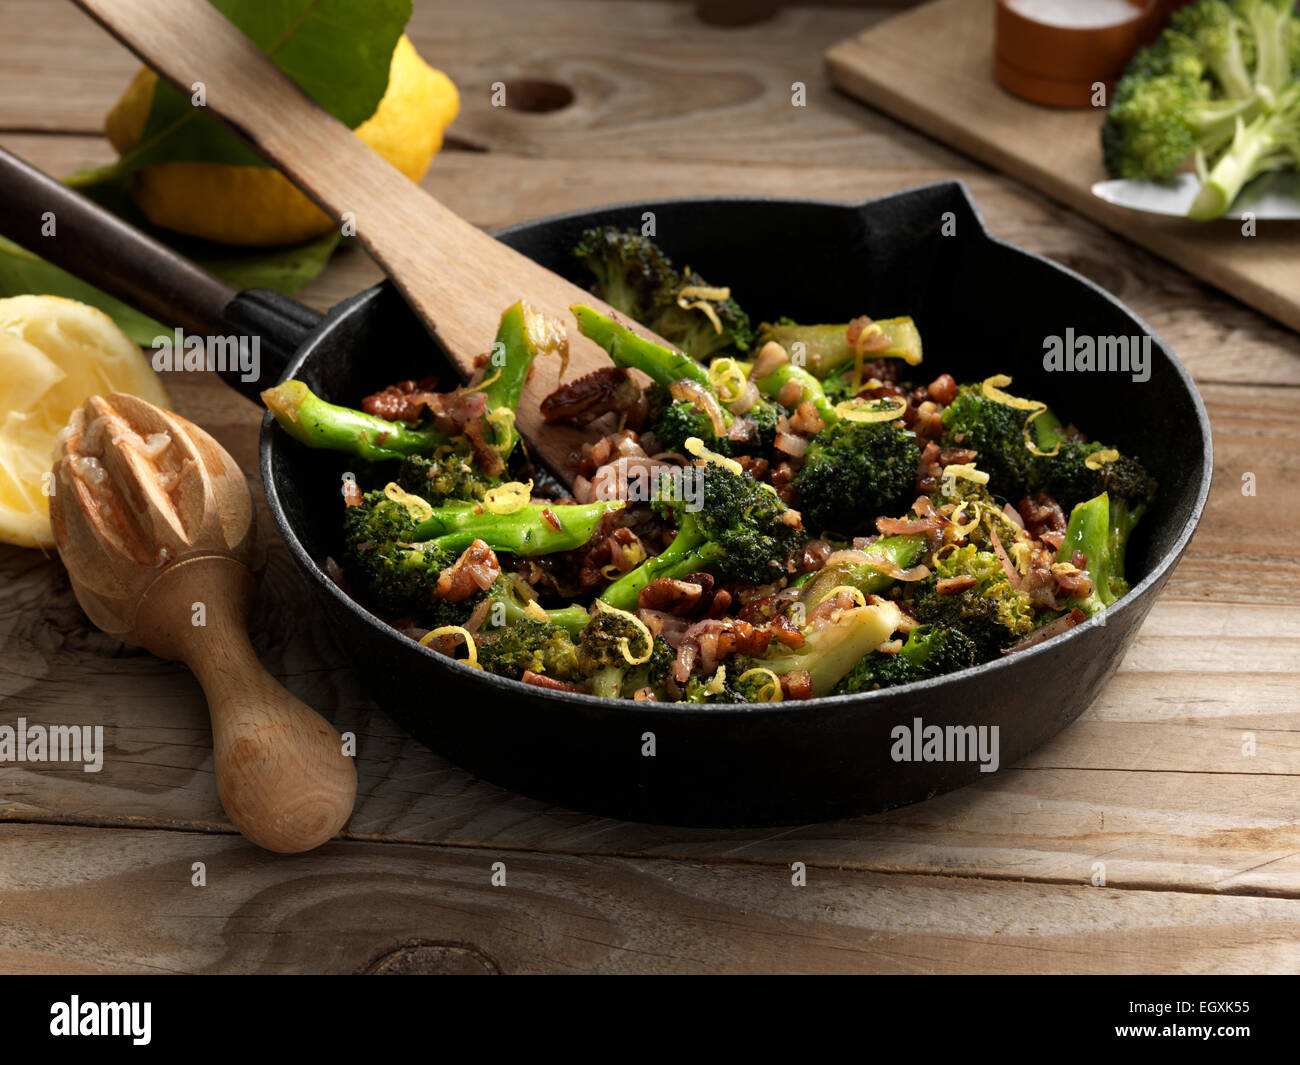 Broccolini Stock Photo